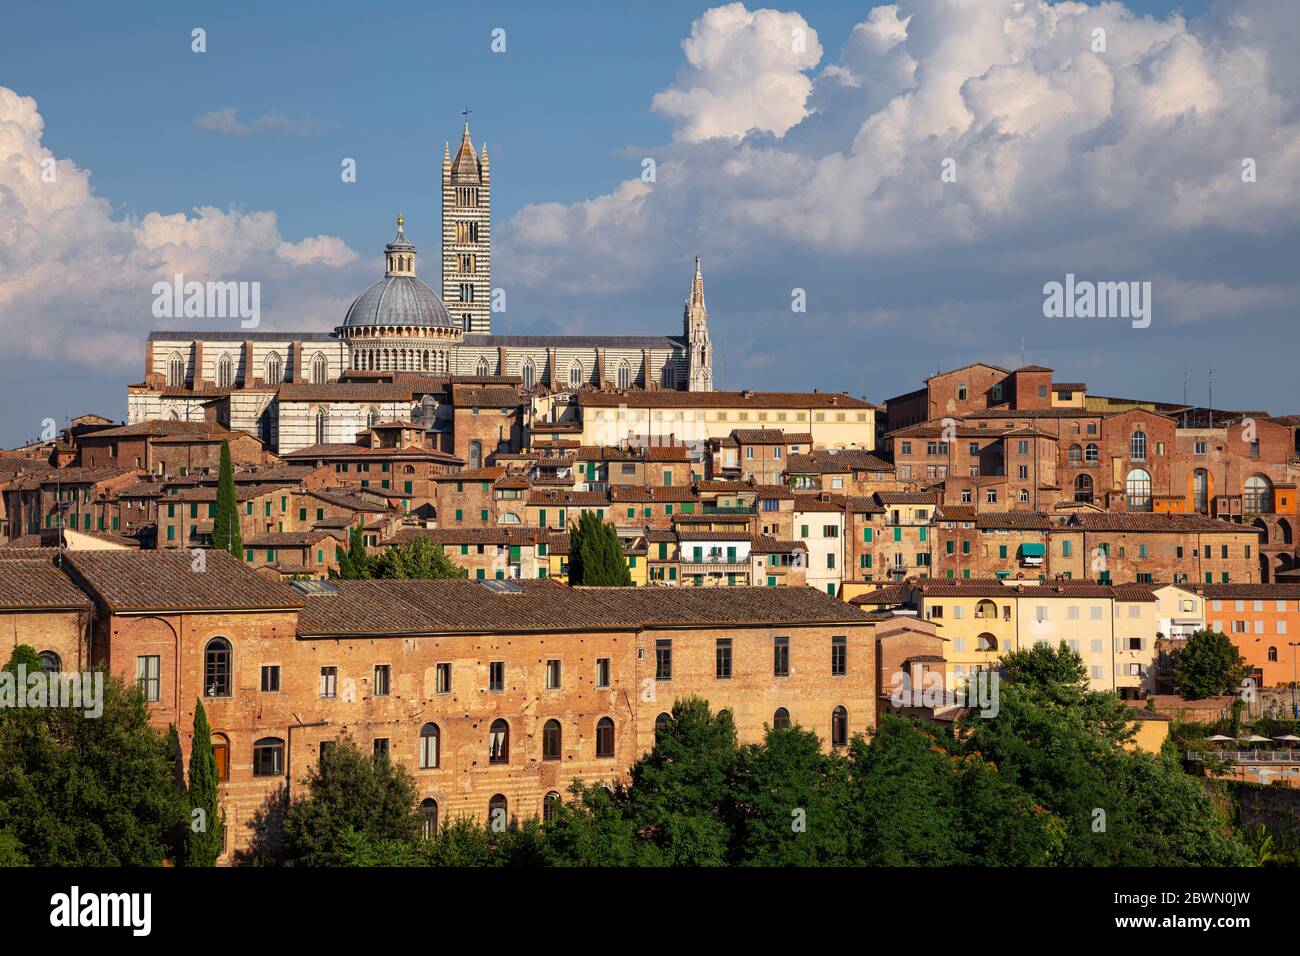 Siena. Luftbild der mittelalterlichen Stadt Siena, Italien bei sonnigen Tag. Stockfoto